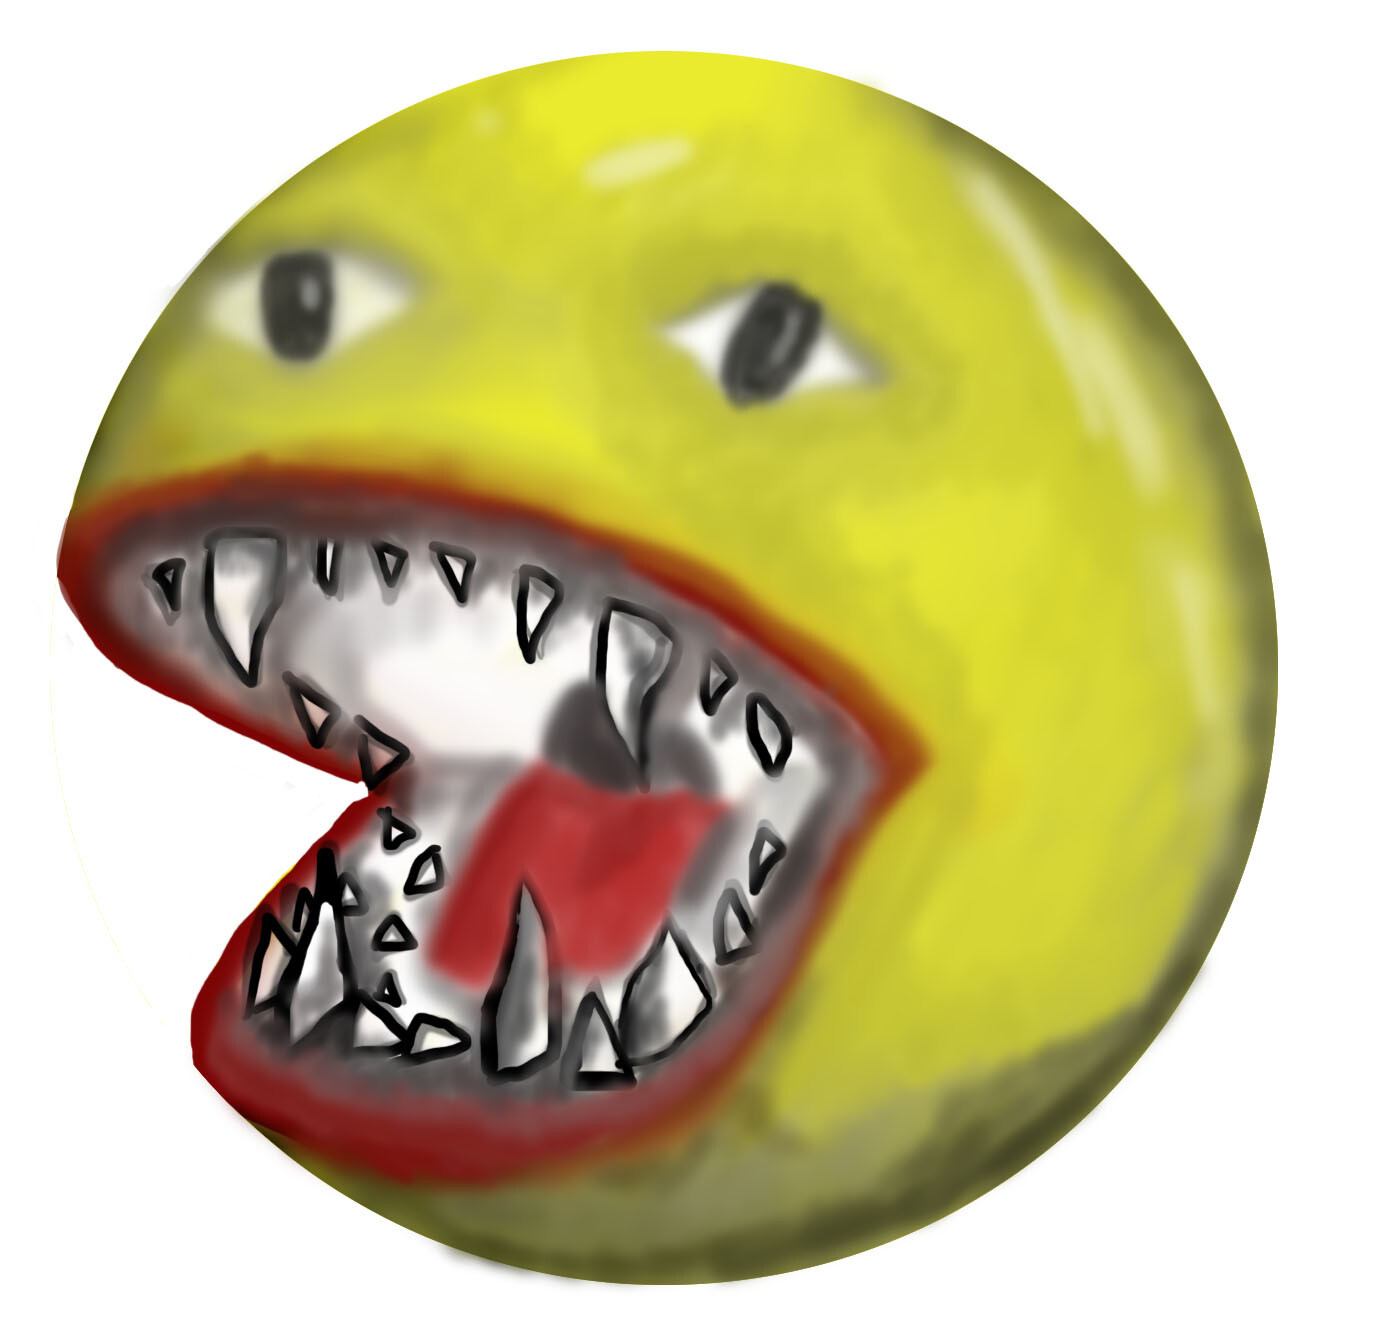 ArtStation - Big mouth cursed emoji